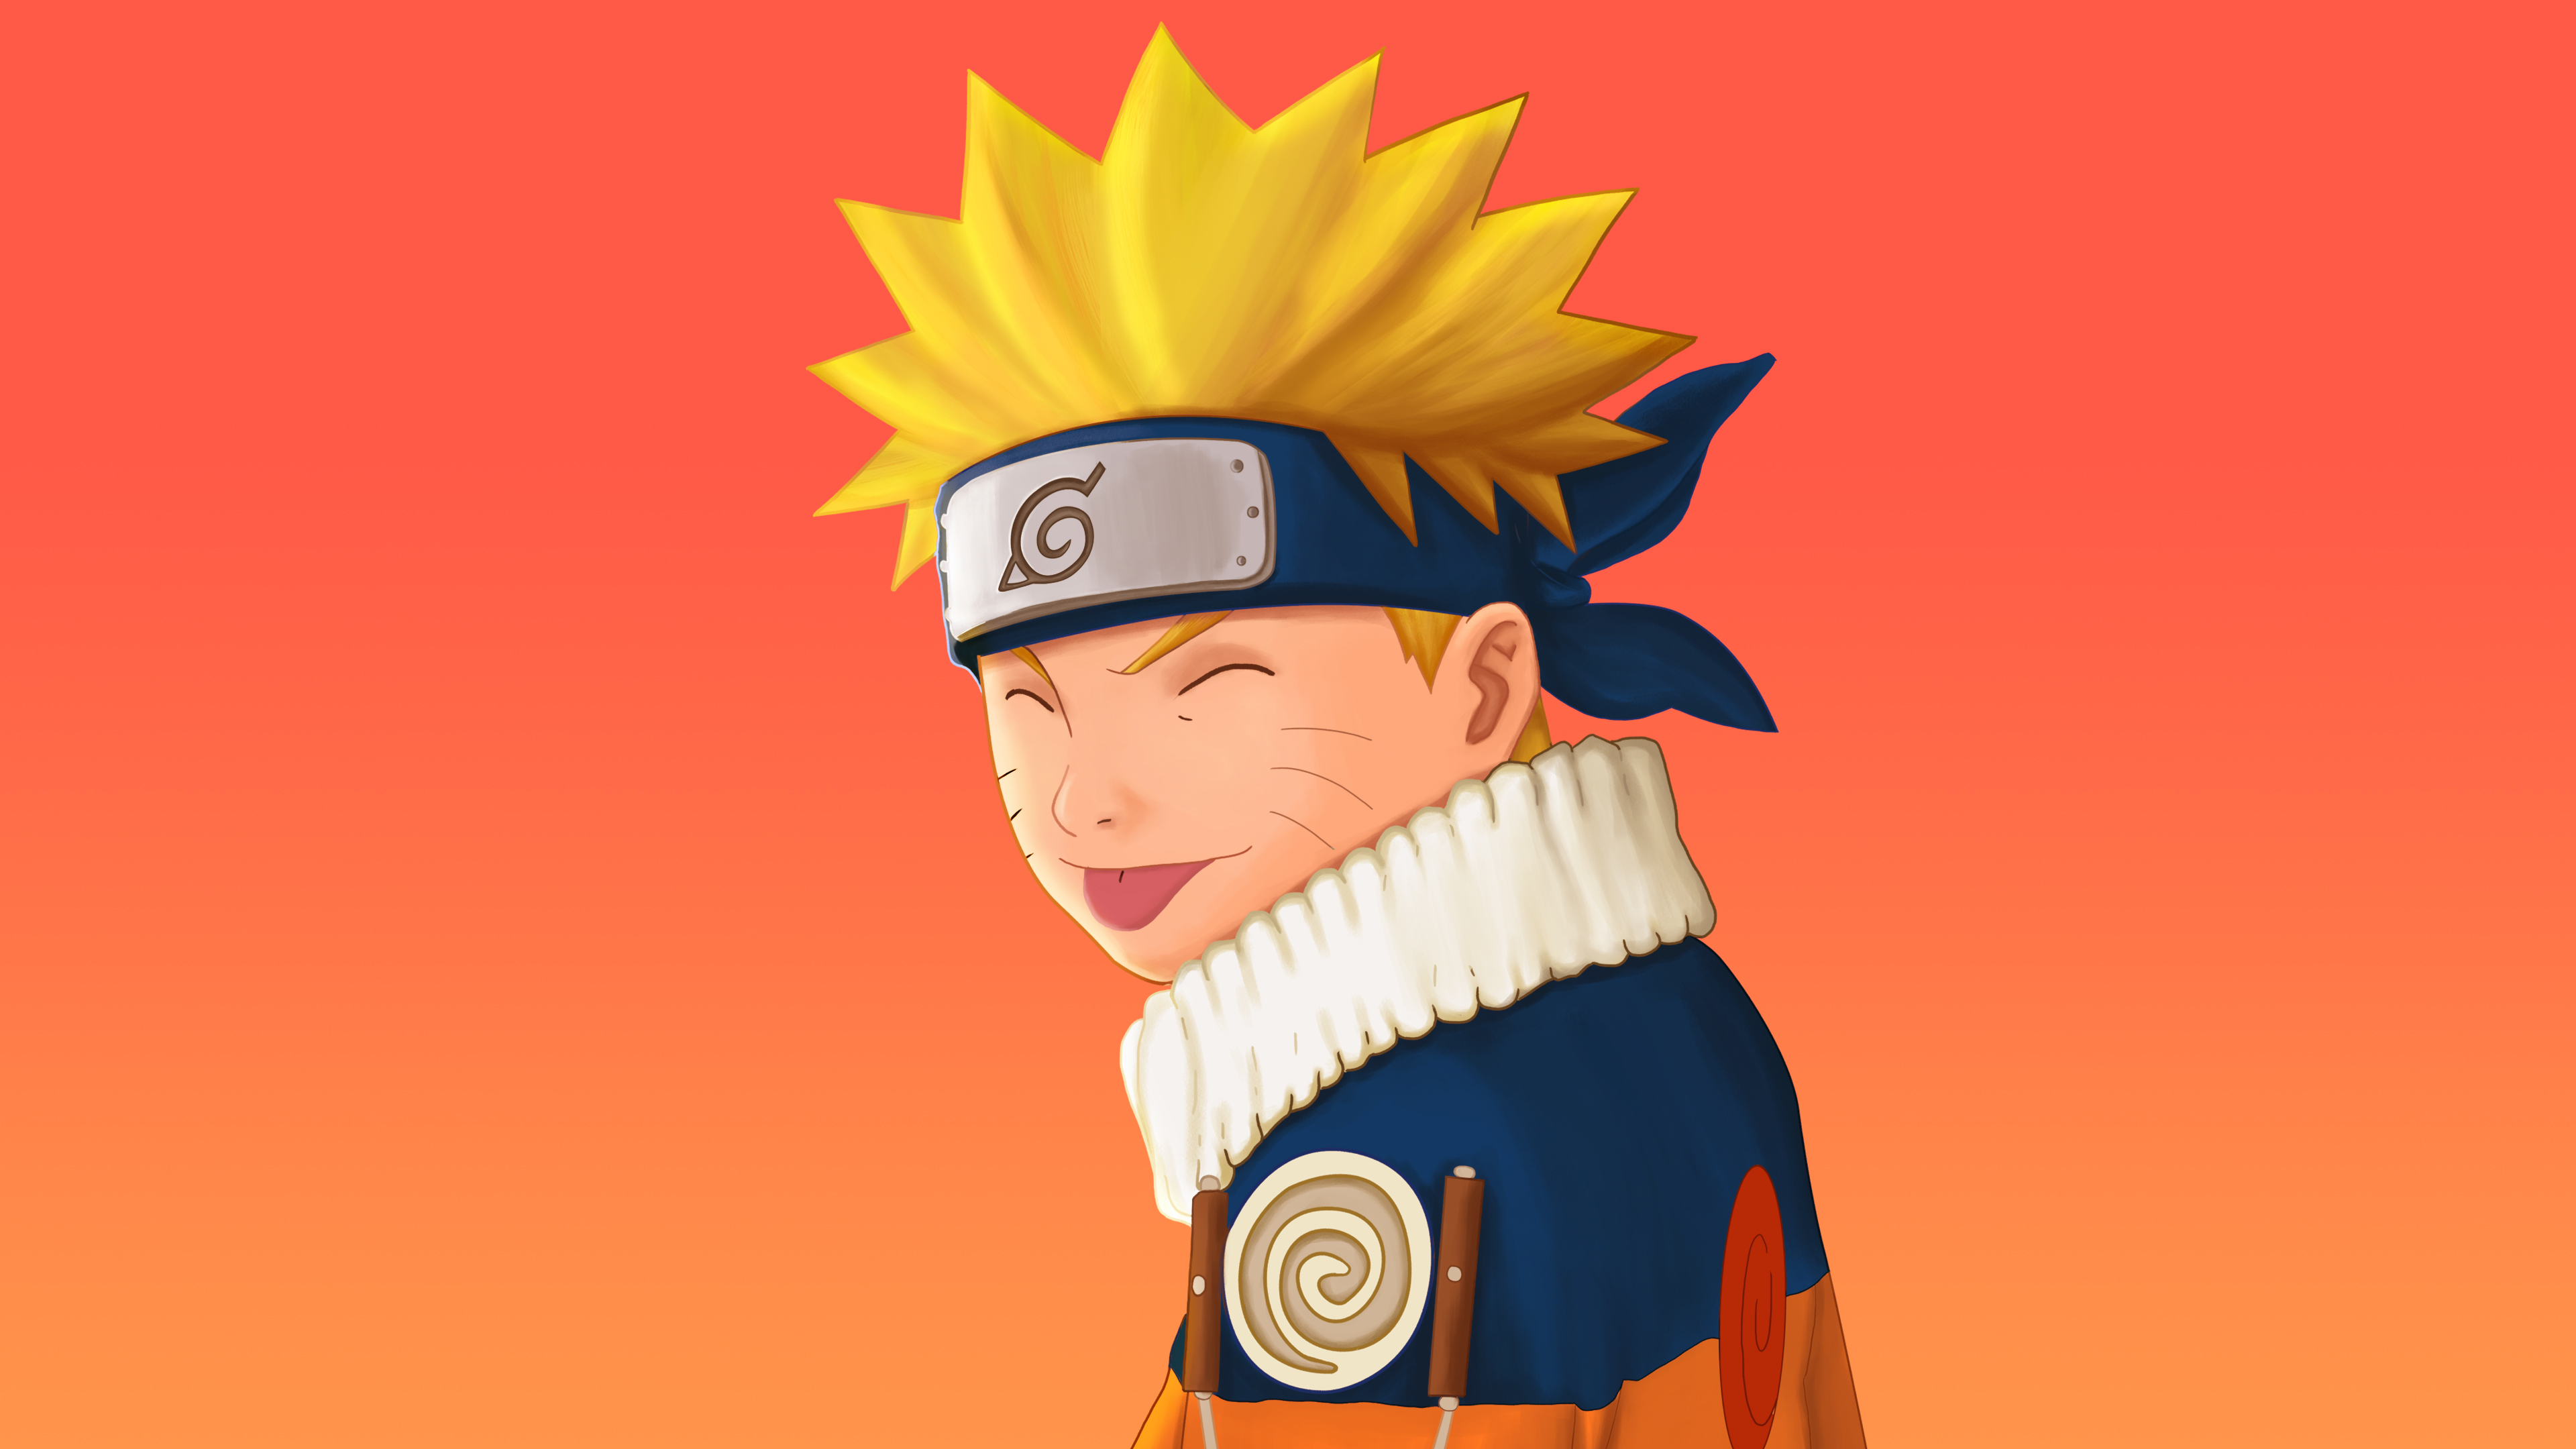 Hình ảnh Naruto Uzumaki Leaf Village đầy tươi sáng và tràn đầy năng lượng. Bạn sẽ được nhìn thấy Nhân vật anh hùng của chúng ta đứng trên tảng đá trong một khung cảnh rộng lớn, phía sau là làng Lá đầy màu sắc. Hãy tưởng tượng về cuộc phiêu lưu đang chờ đợi và tải xuống hình ảnh này để bắt đầu cuộc hành trình tuyệt vời của Naruto. 